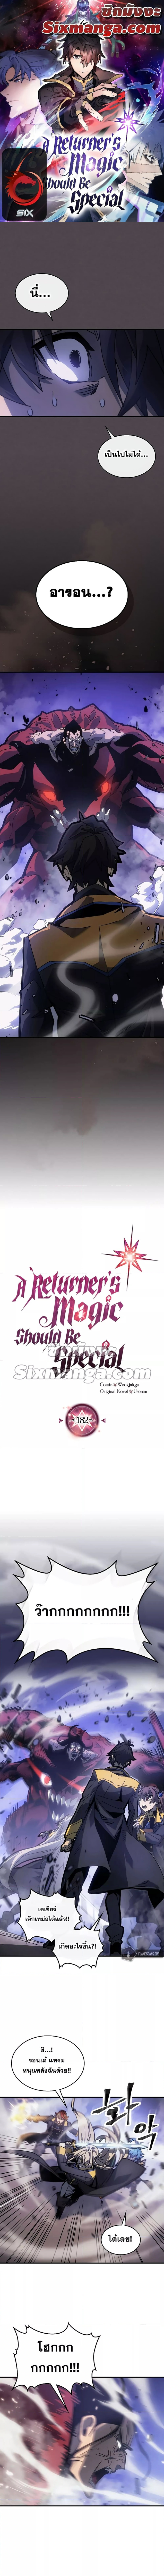 A Returner's Magic Should Be Special 182 (1)